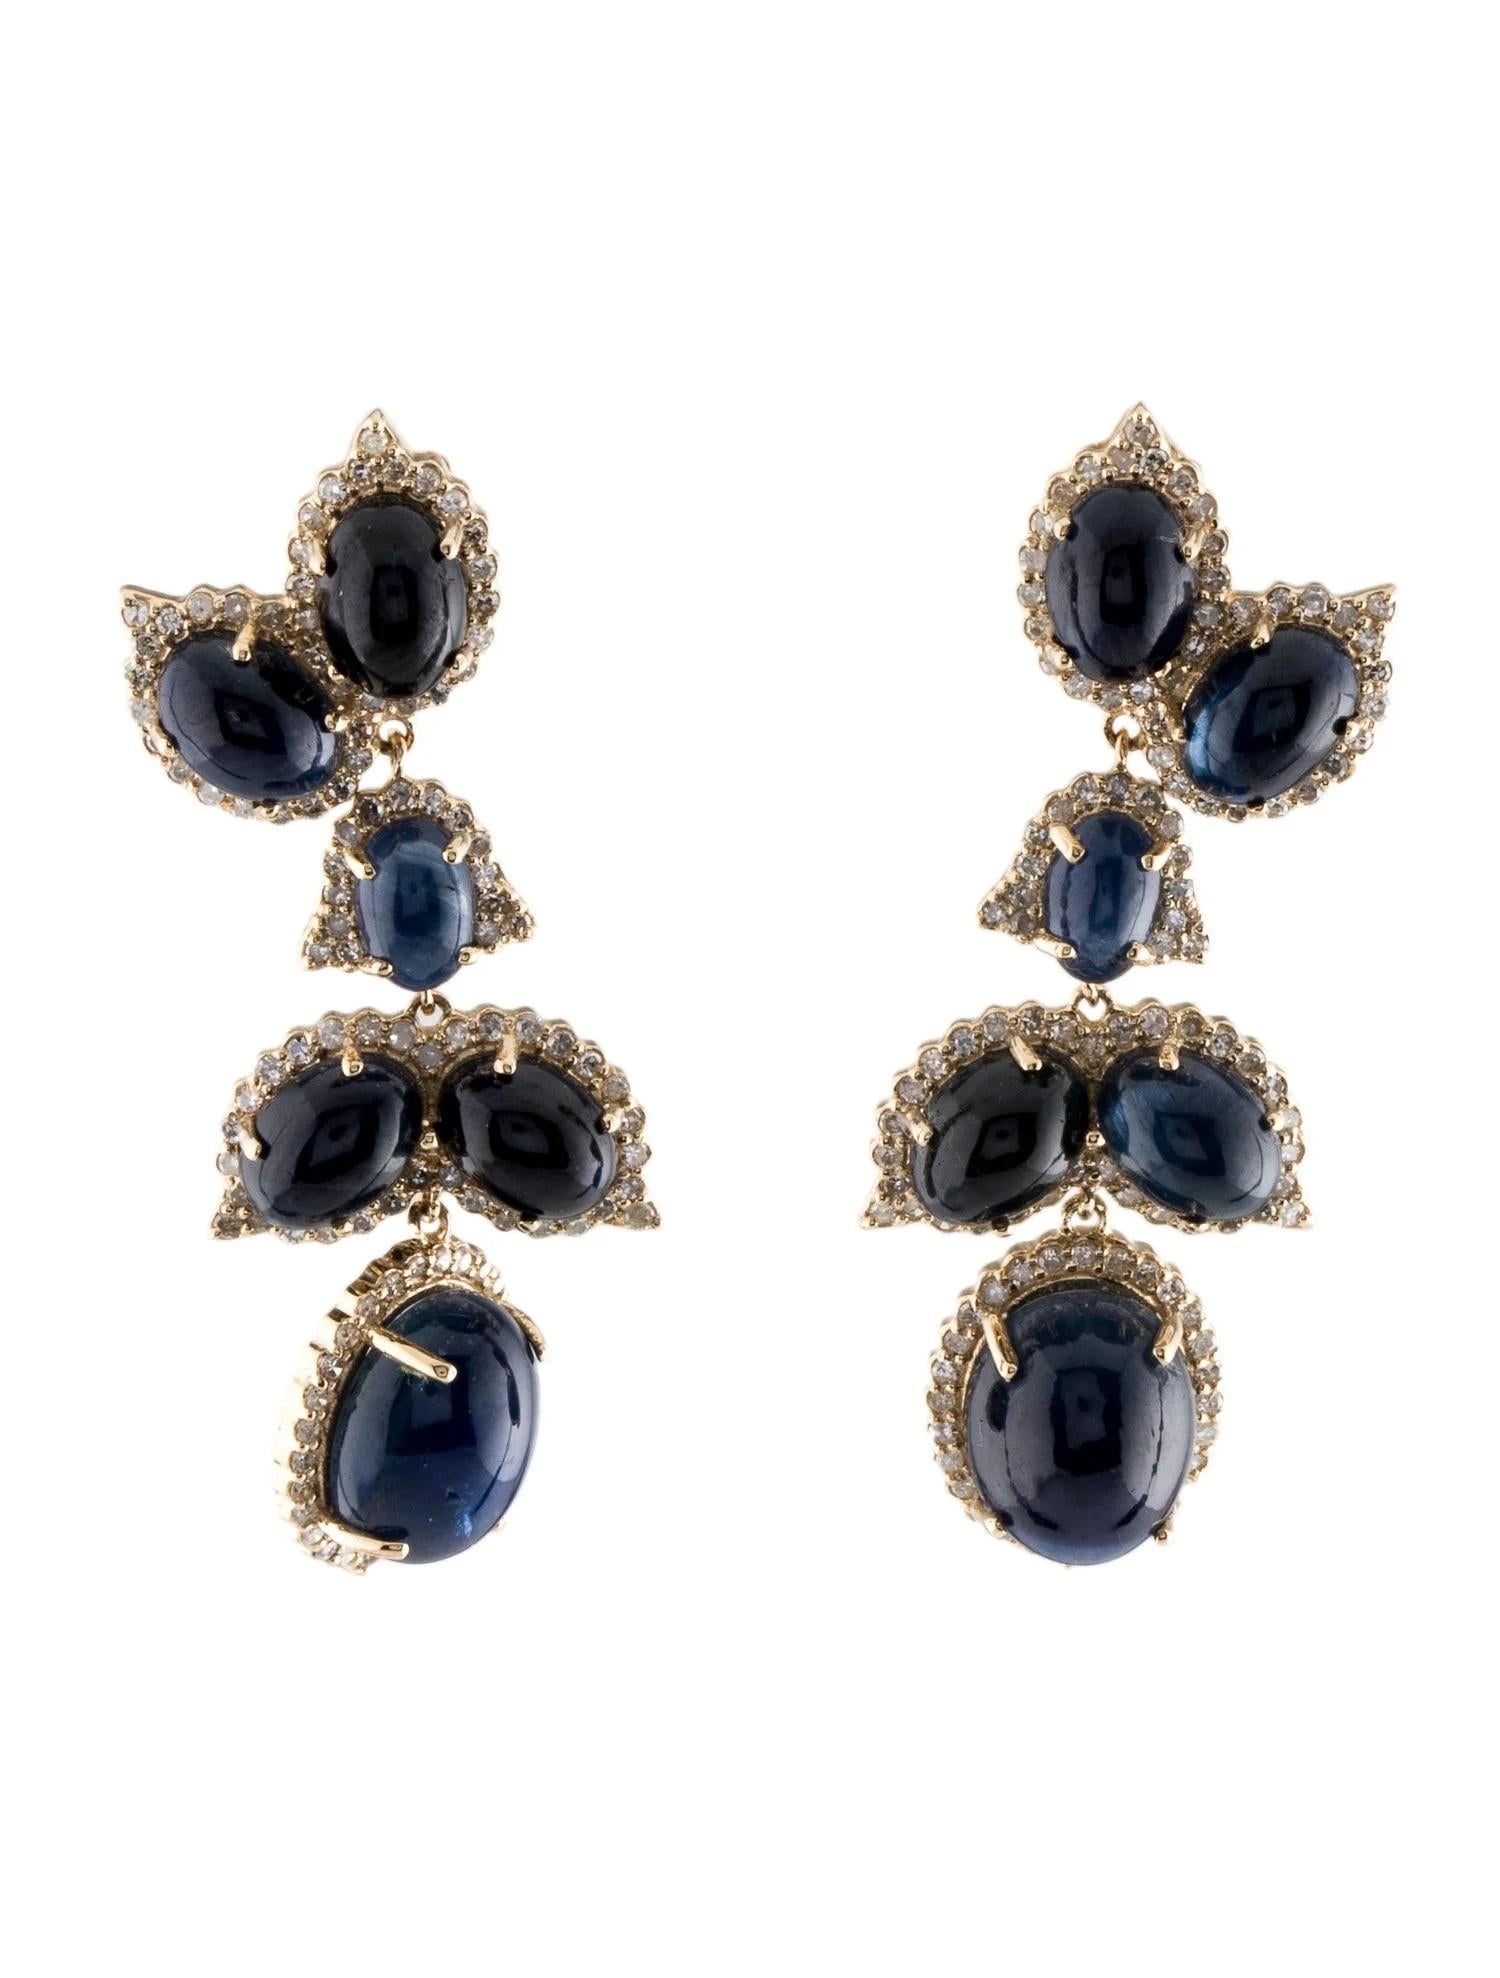 14K Sapphire & Diamond Drop Earrings - Elegant Oval Cabochons